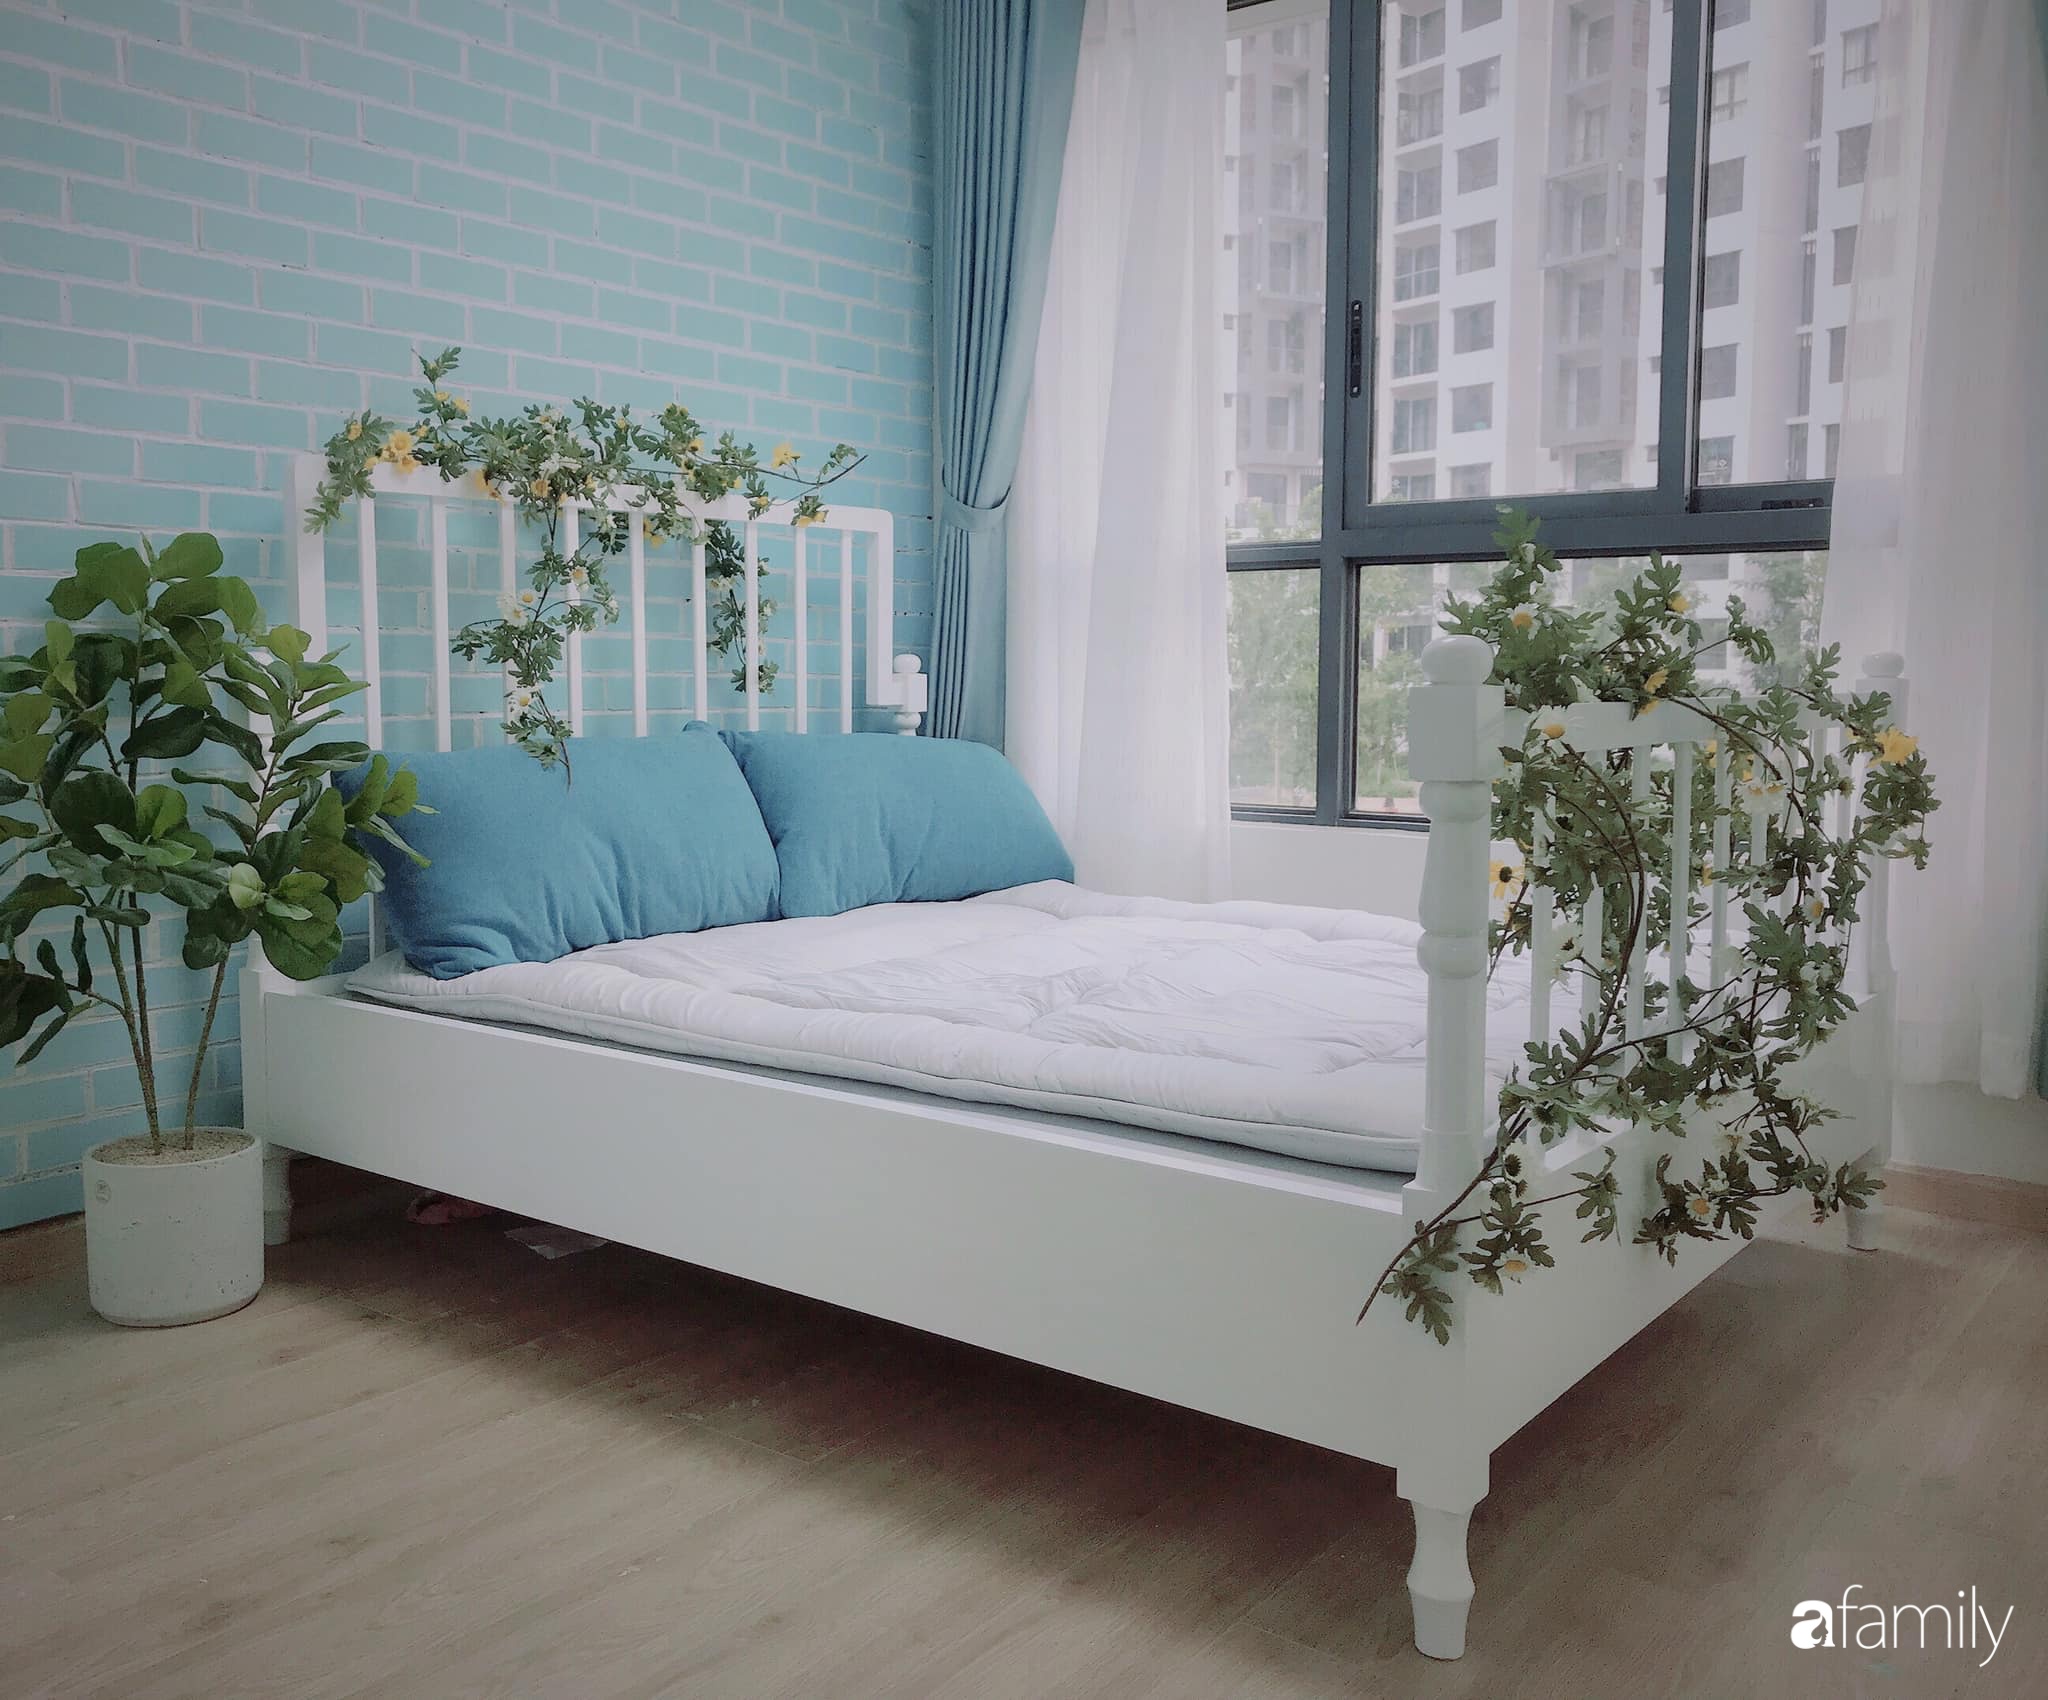 Căn hộ 71m² đẹp nhẹ nhàng, xinh yêu với điểm nhấn màu xanh bạc hà có chi phí hoàn thiện 200 triệu đồng ở Sài Gòn - Ảnh 18.